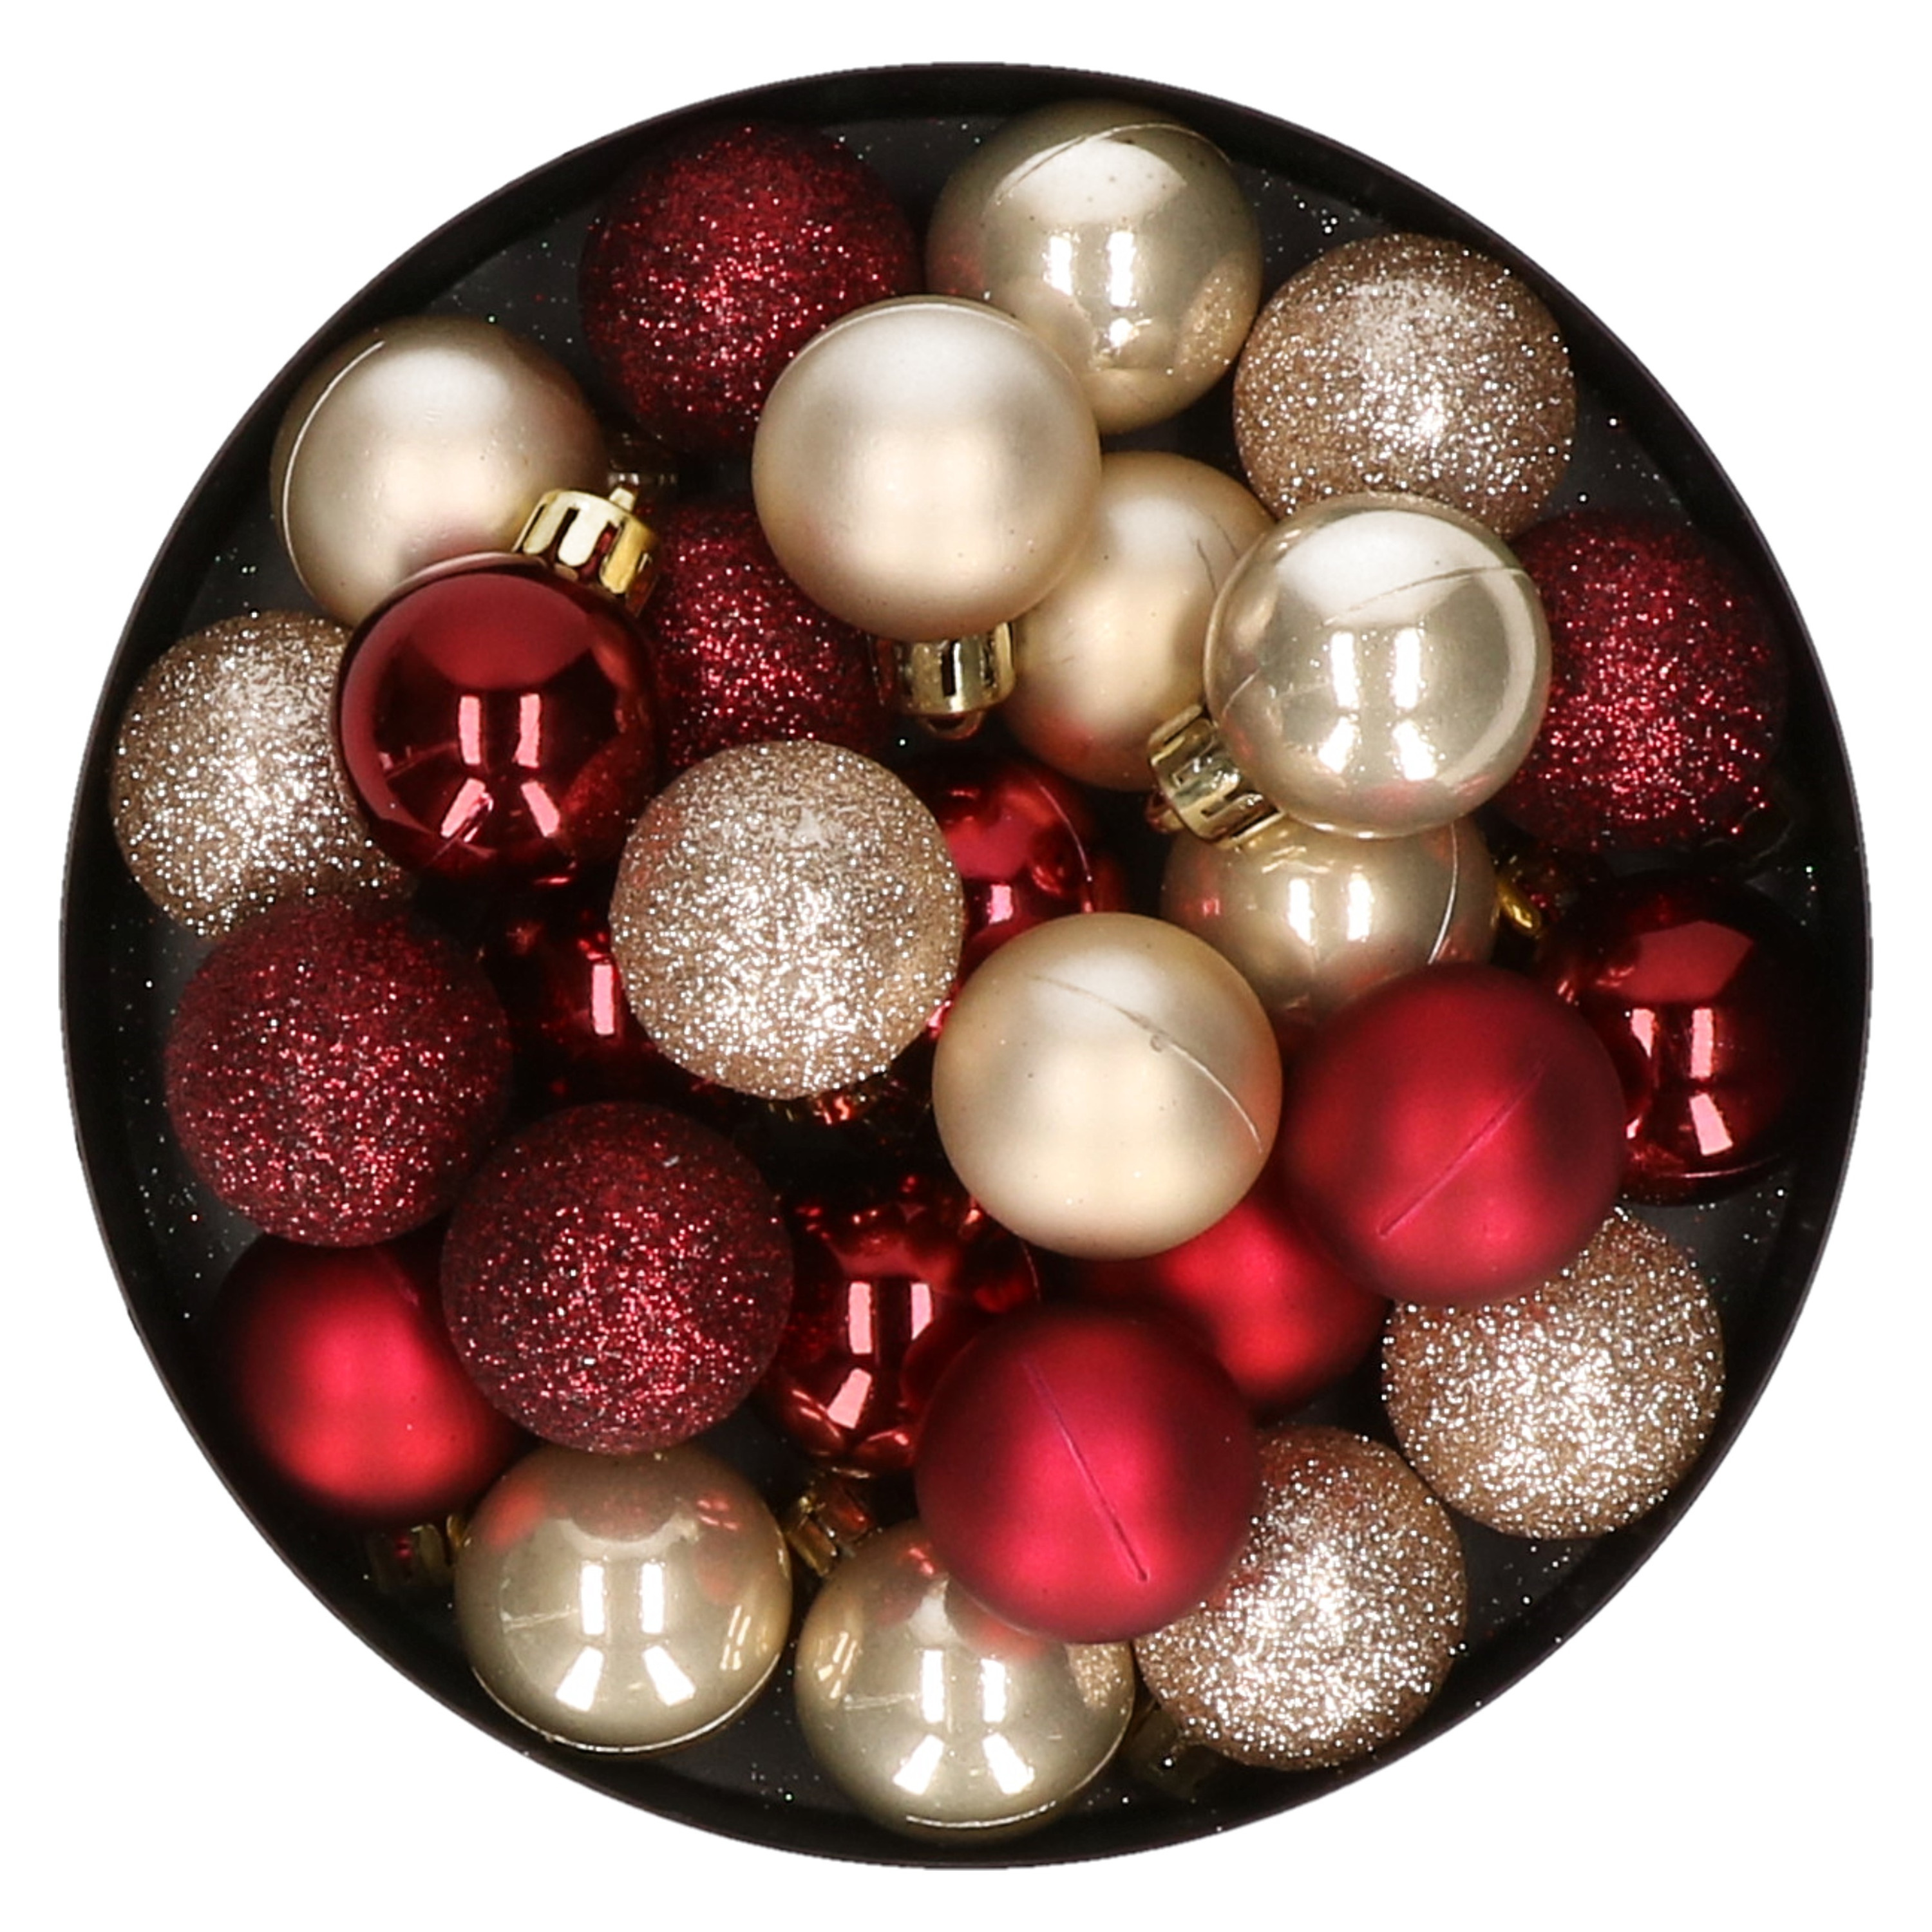 28x stuks kunststof kerstballen parel-champagne en donkerrood mix 3 cm